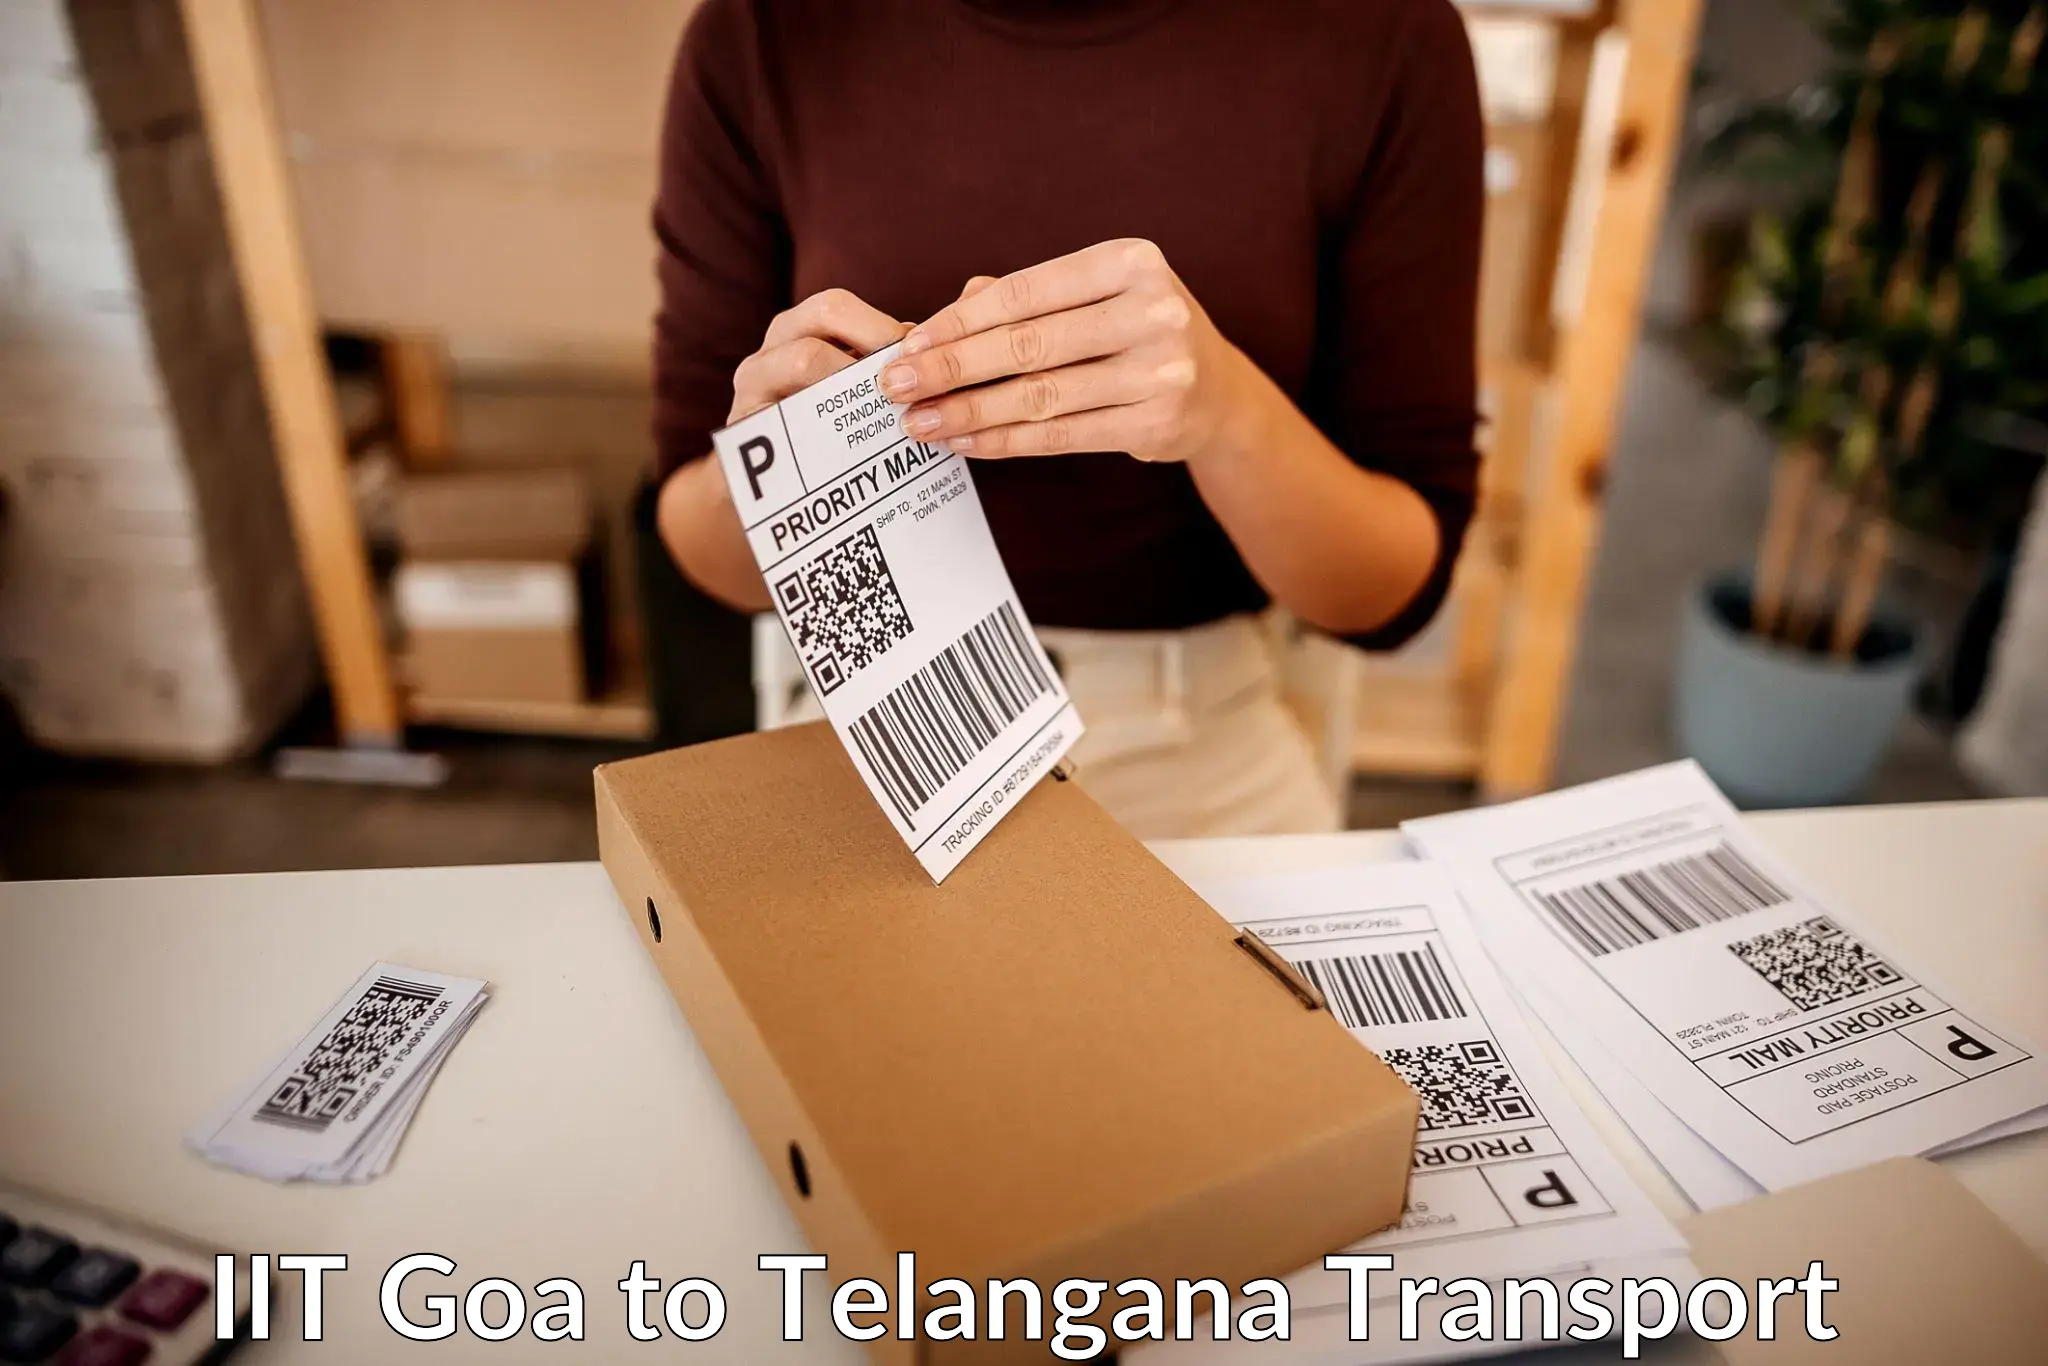 Online transport service IIT Goa to Chegunta